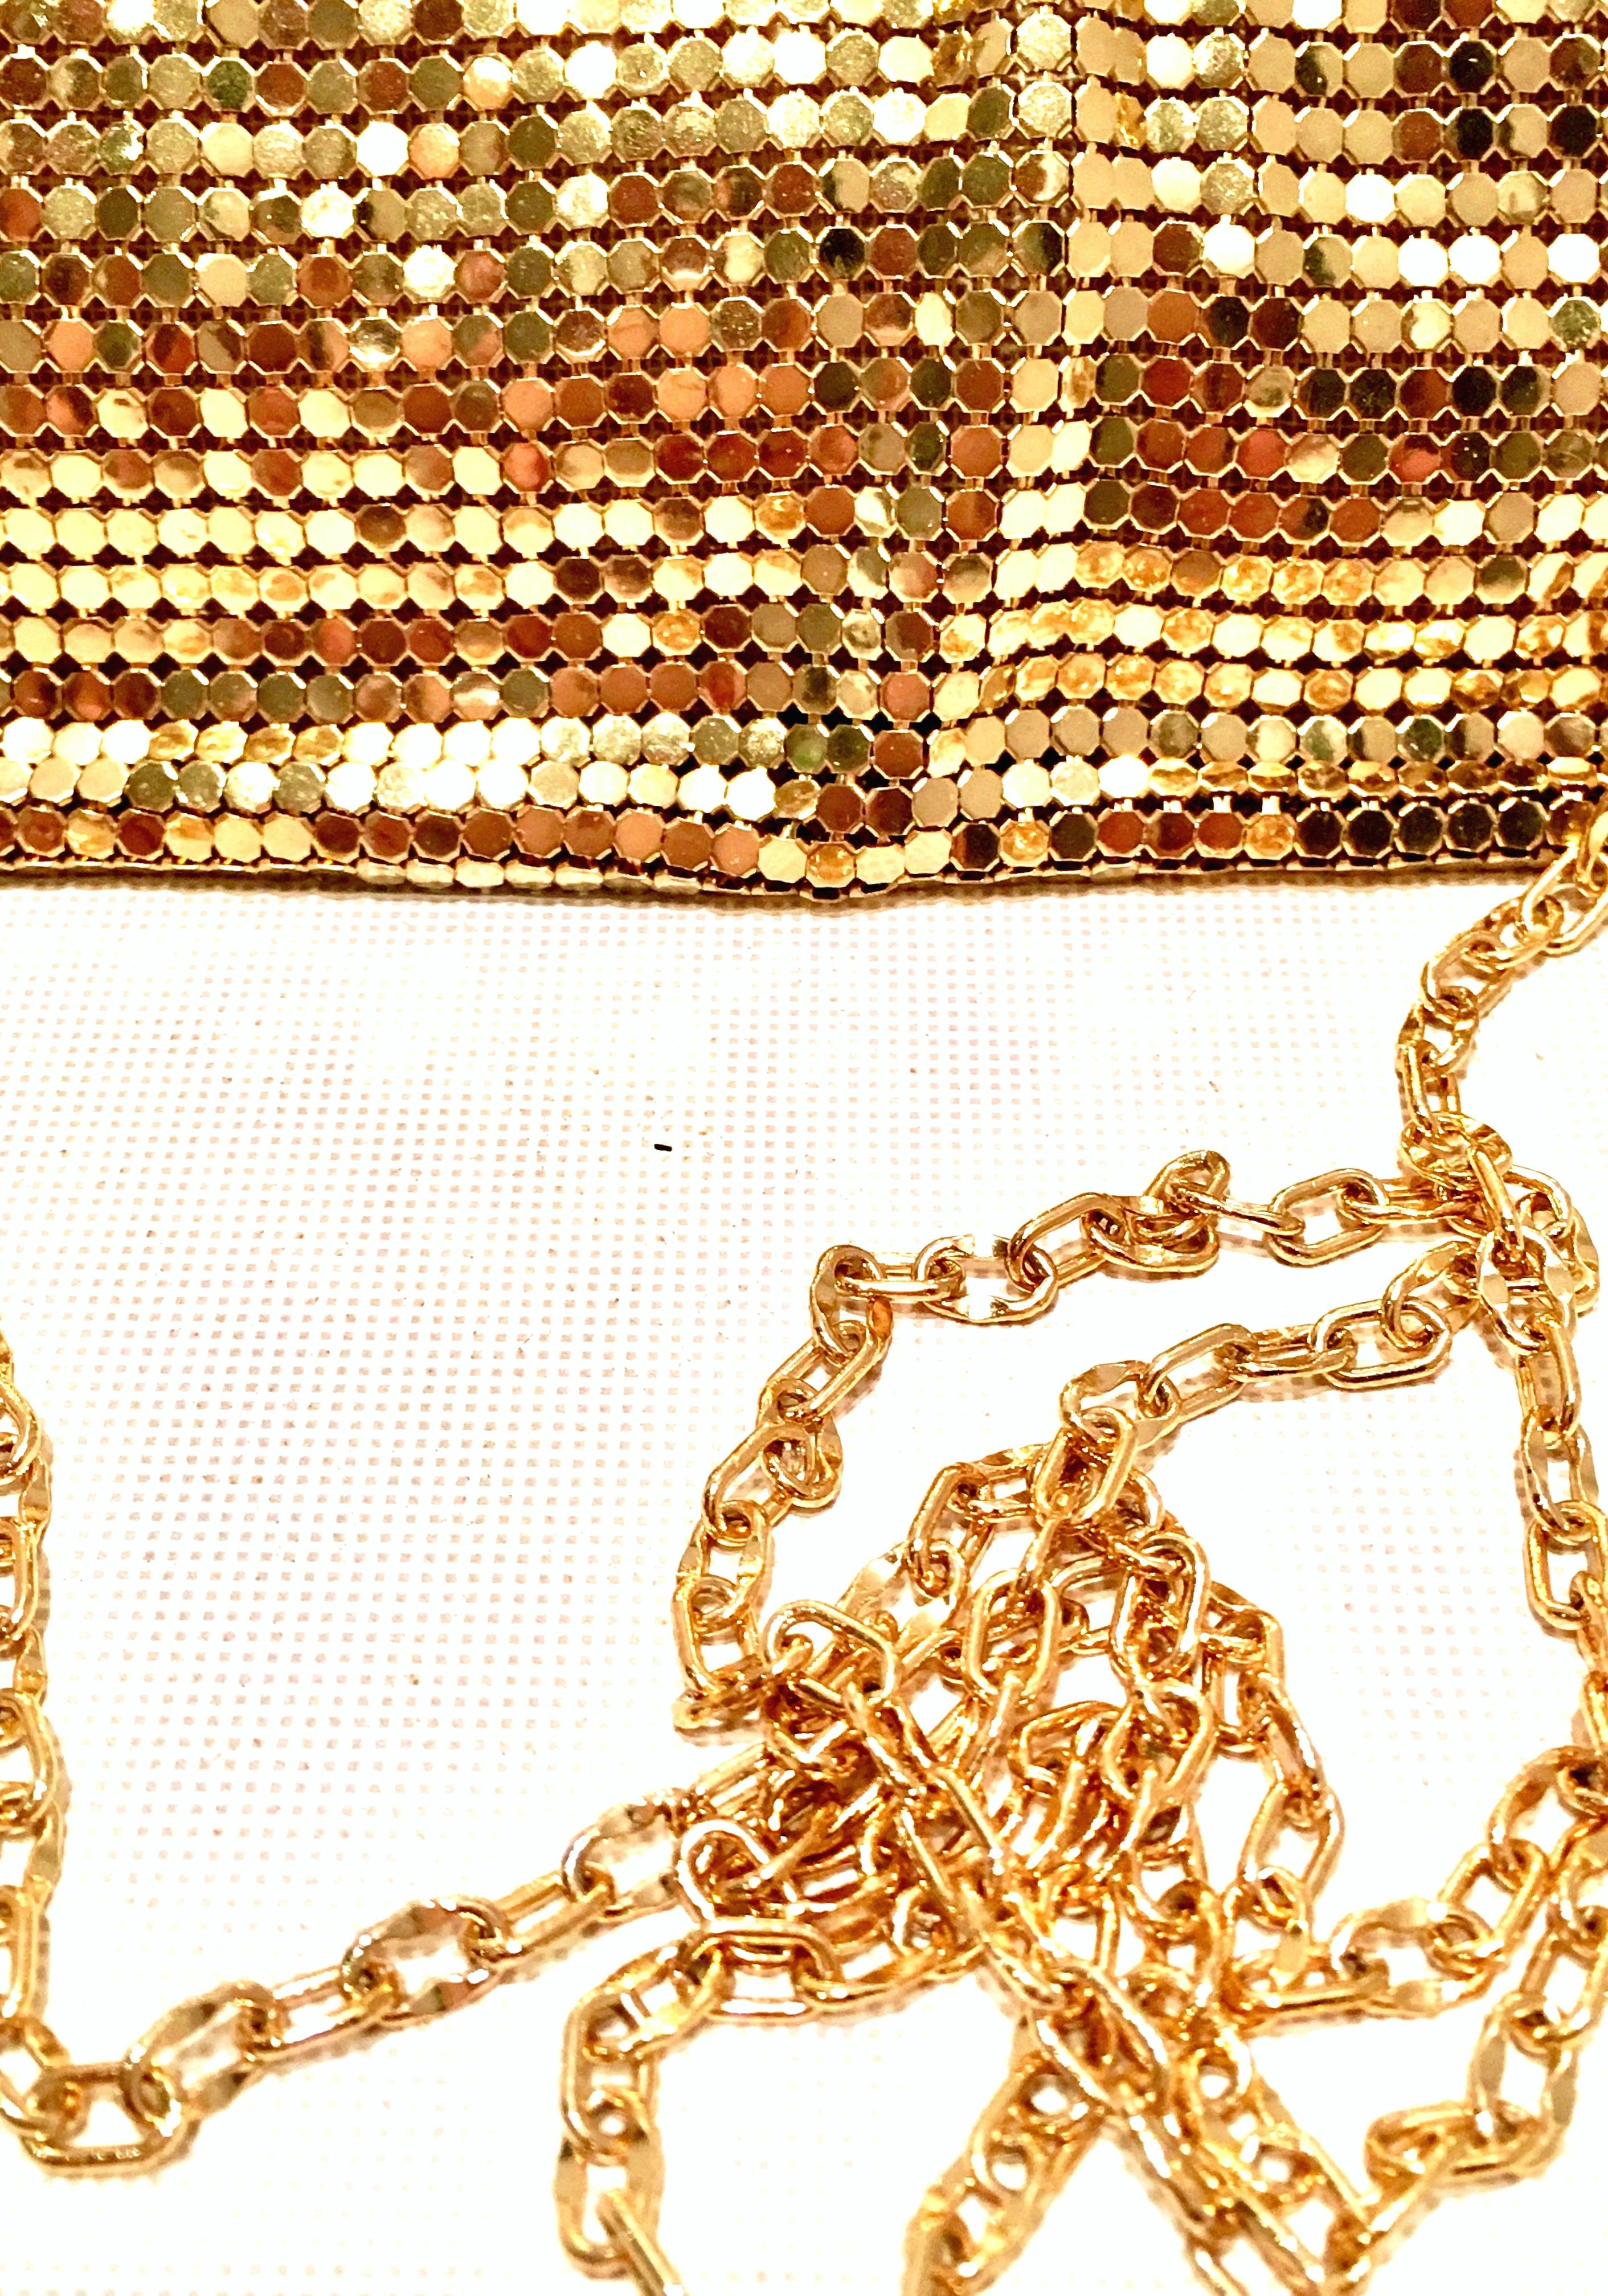 20th Century Gold Metal Mesh & Swarovksi Crystal Evening Bag By, Whiting & Davis 4